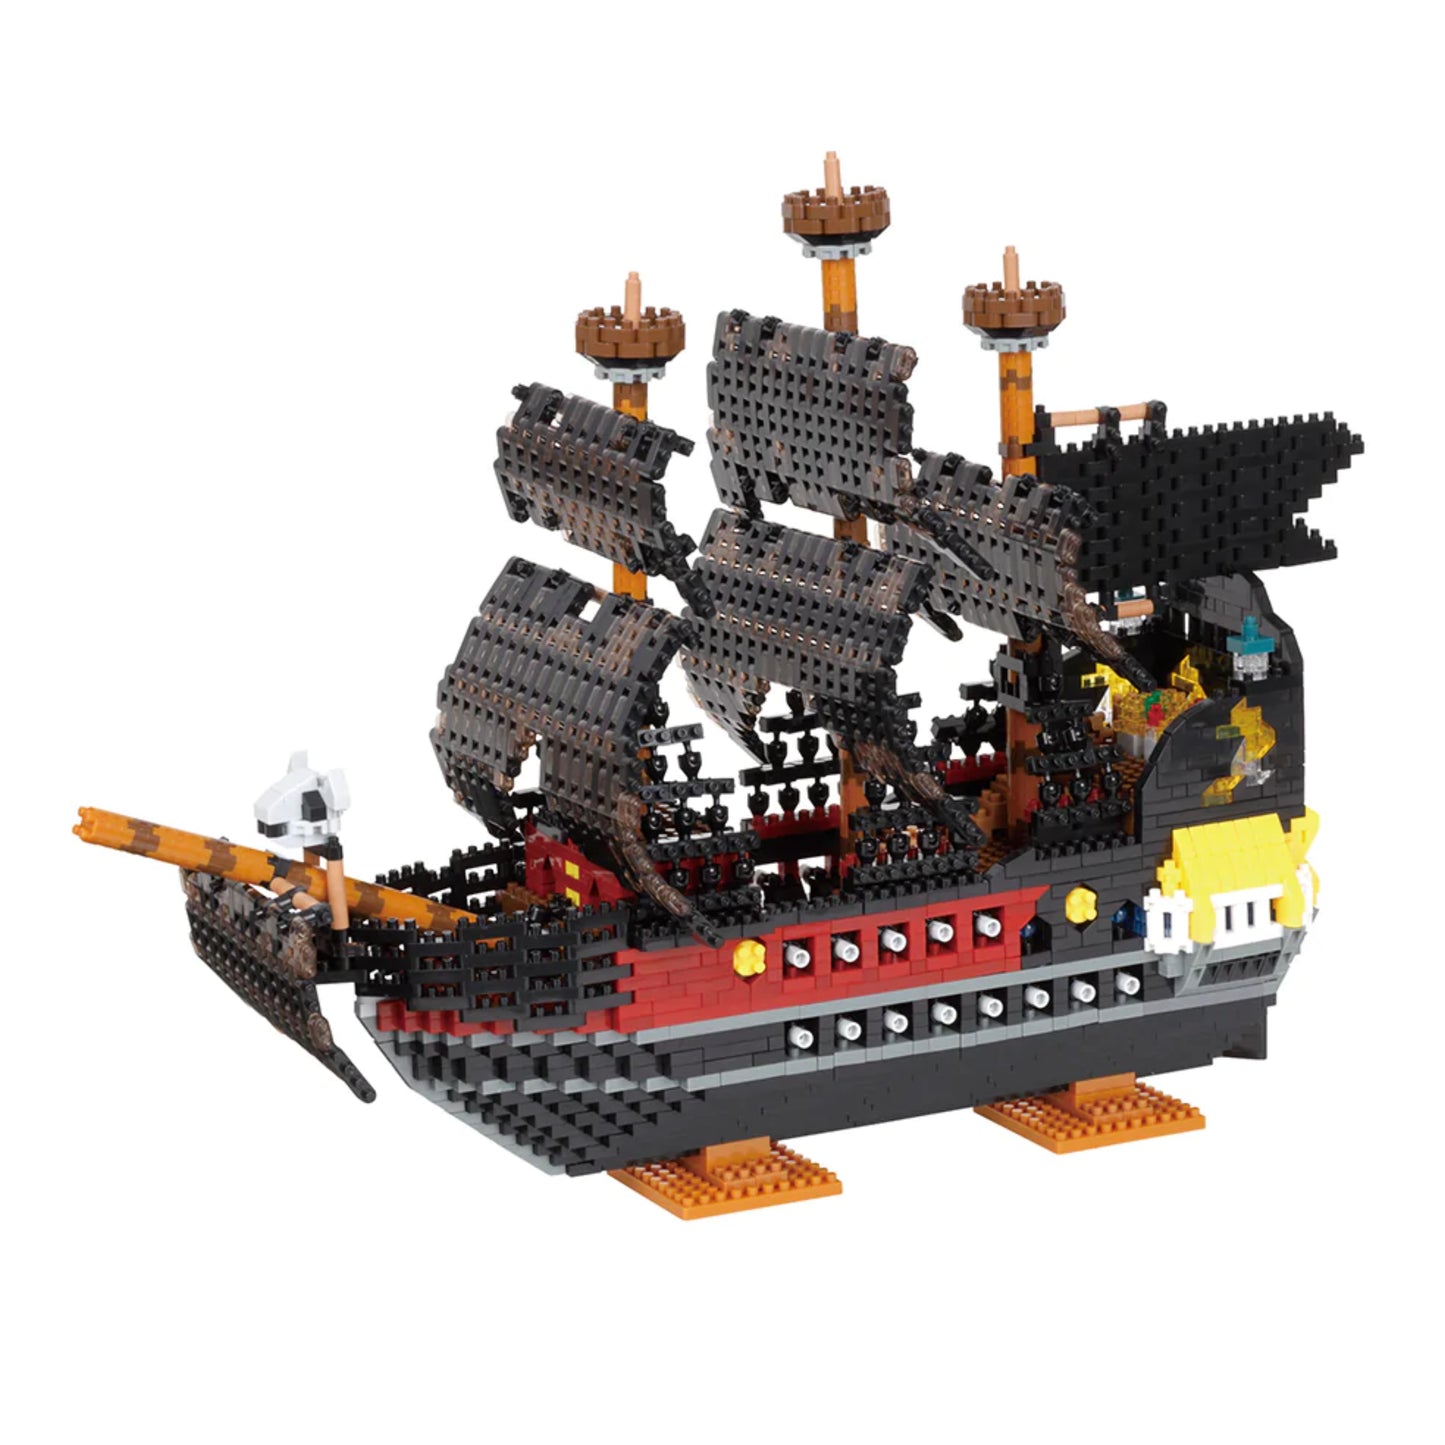 Nanoblock Deluxe Pirate Ship